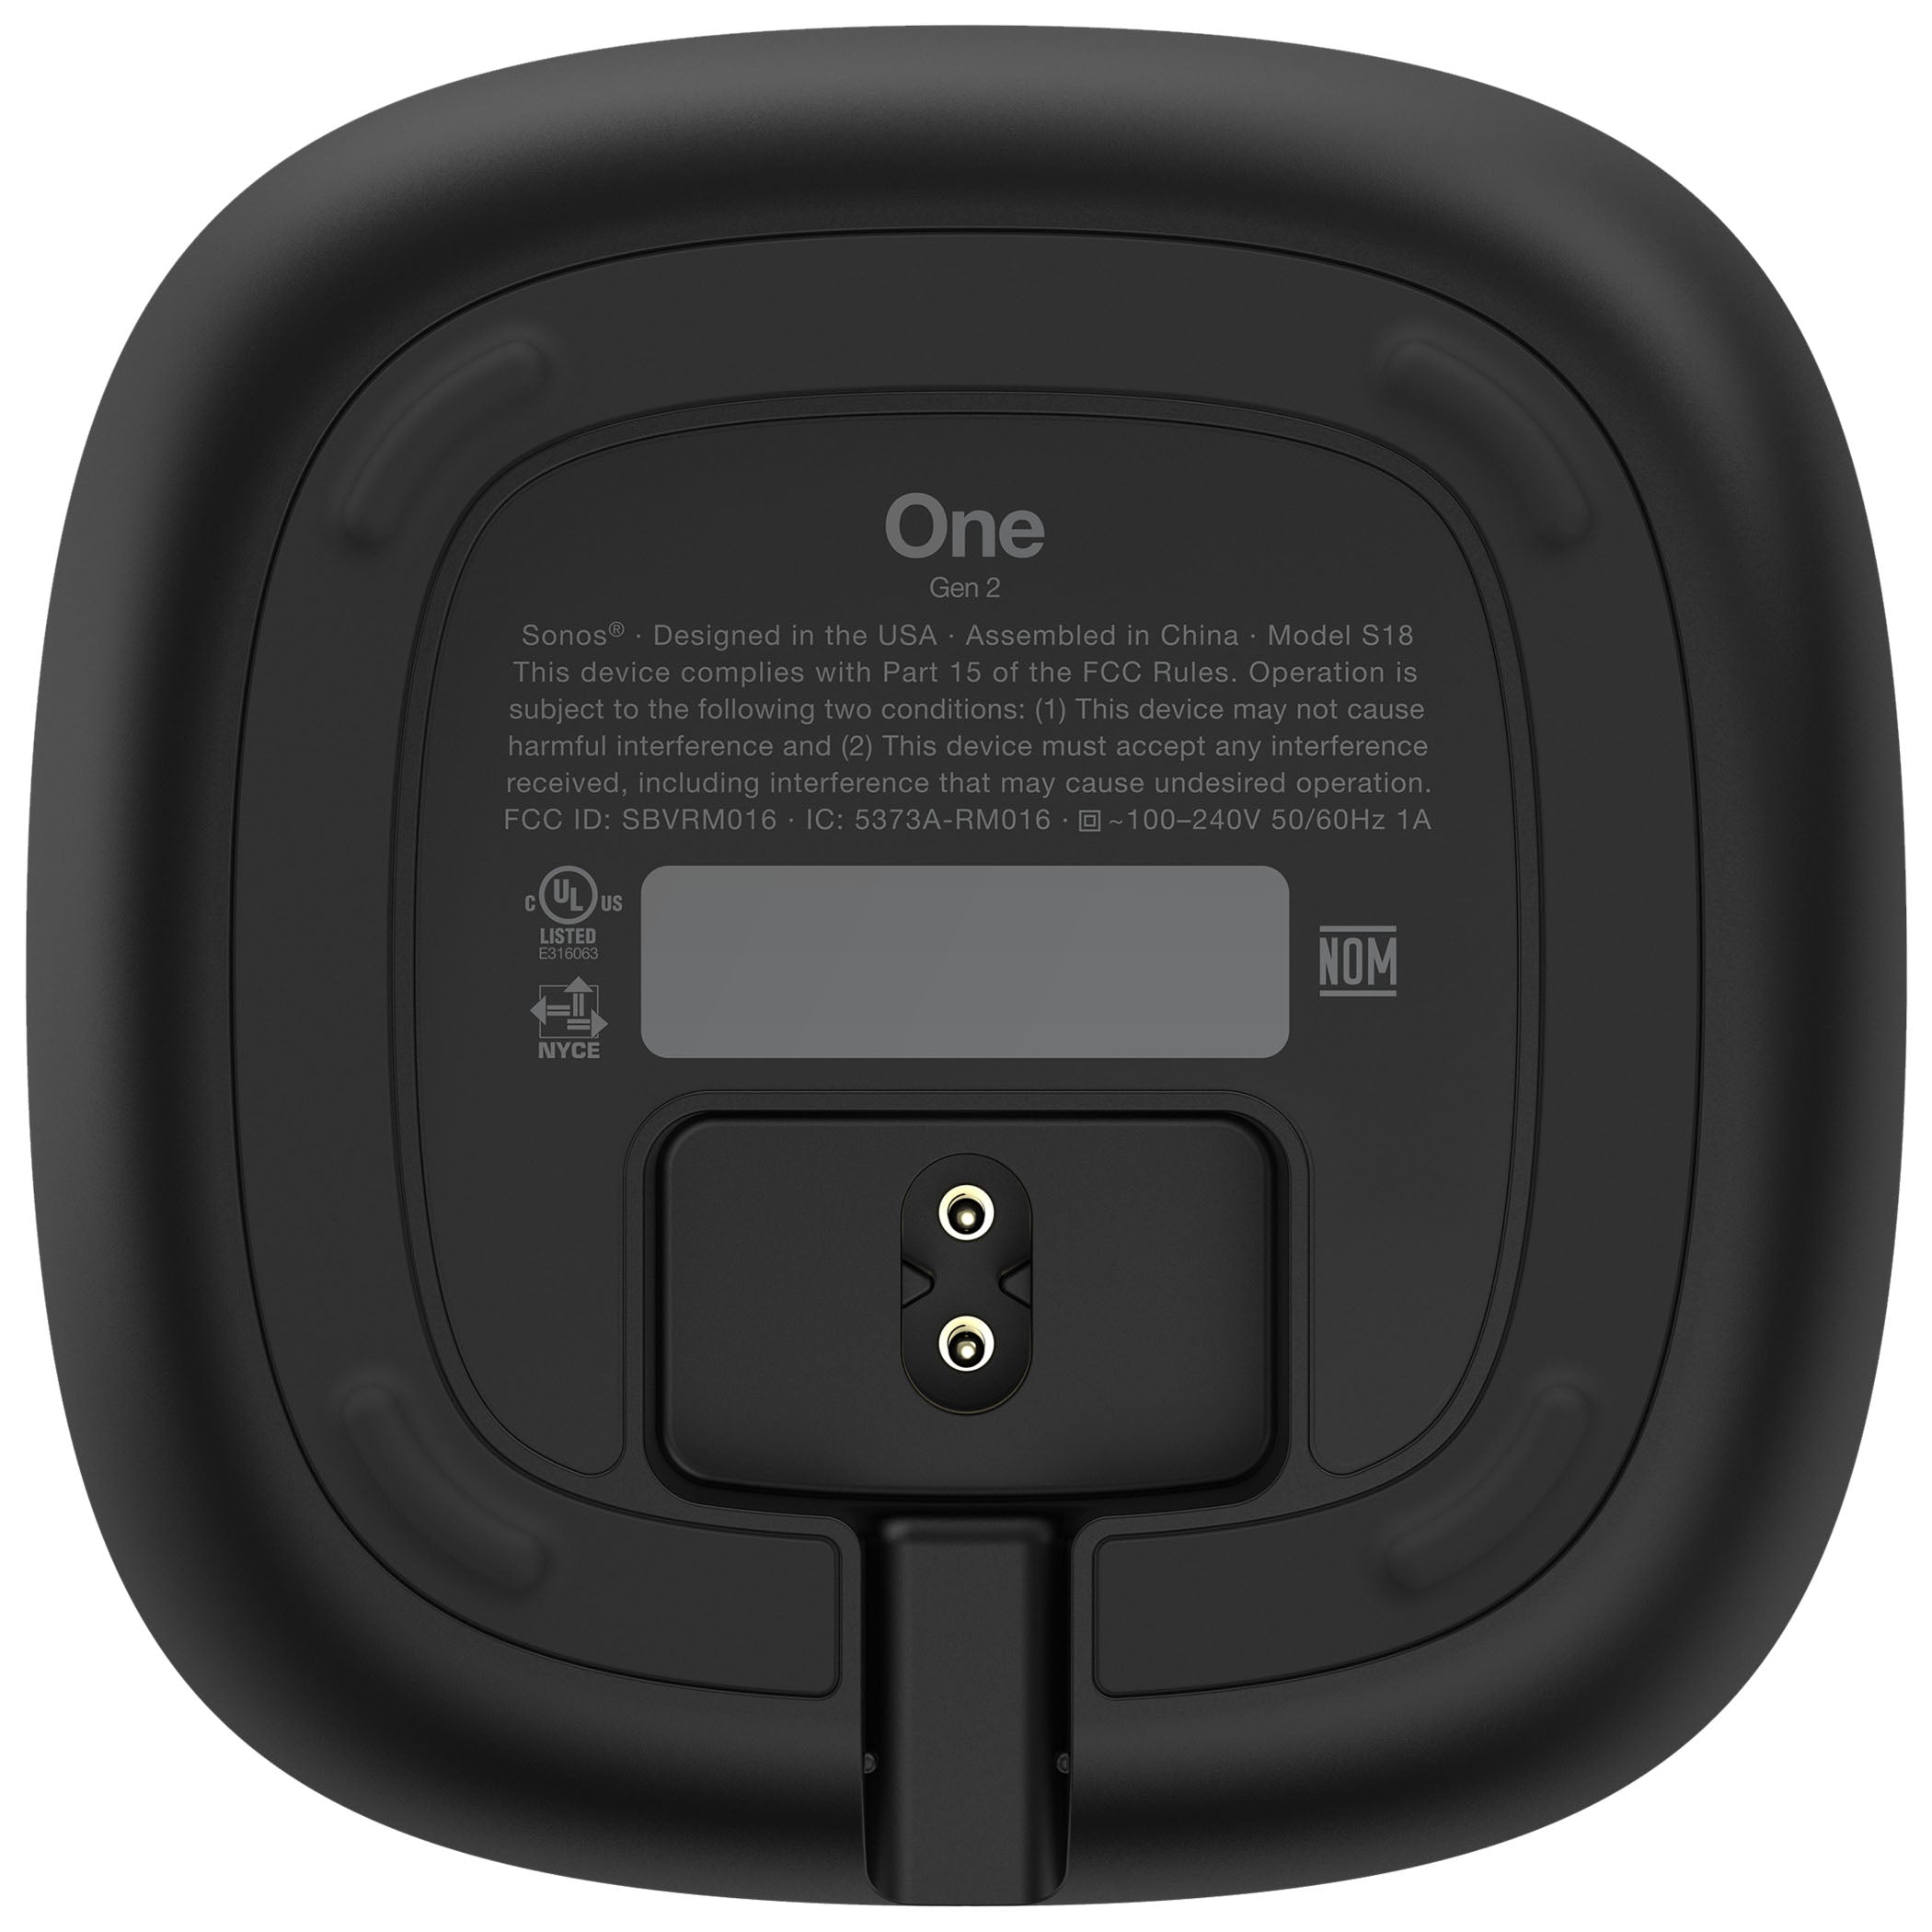 Sonos One Gen 2 - The Smart Speaker for Music Lovers